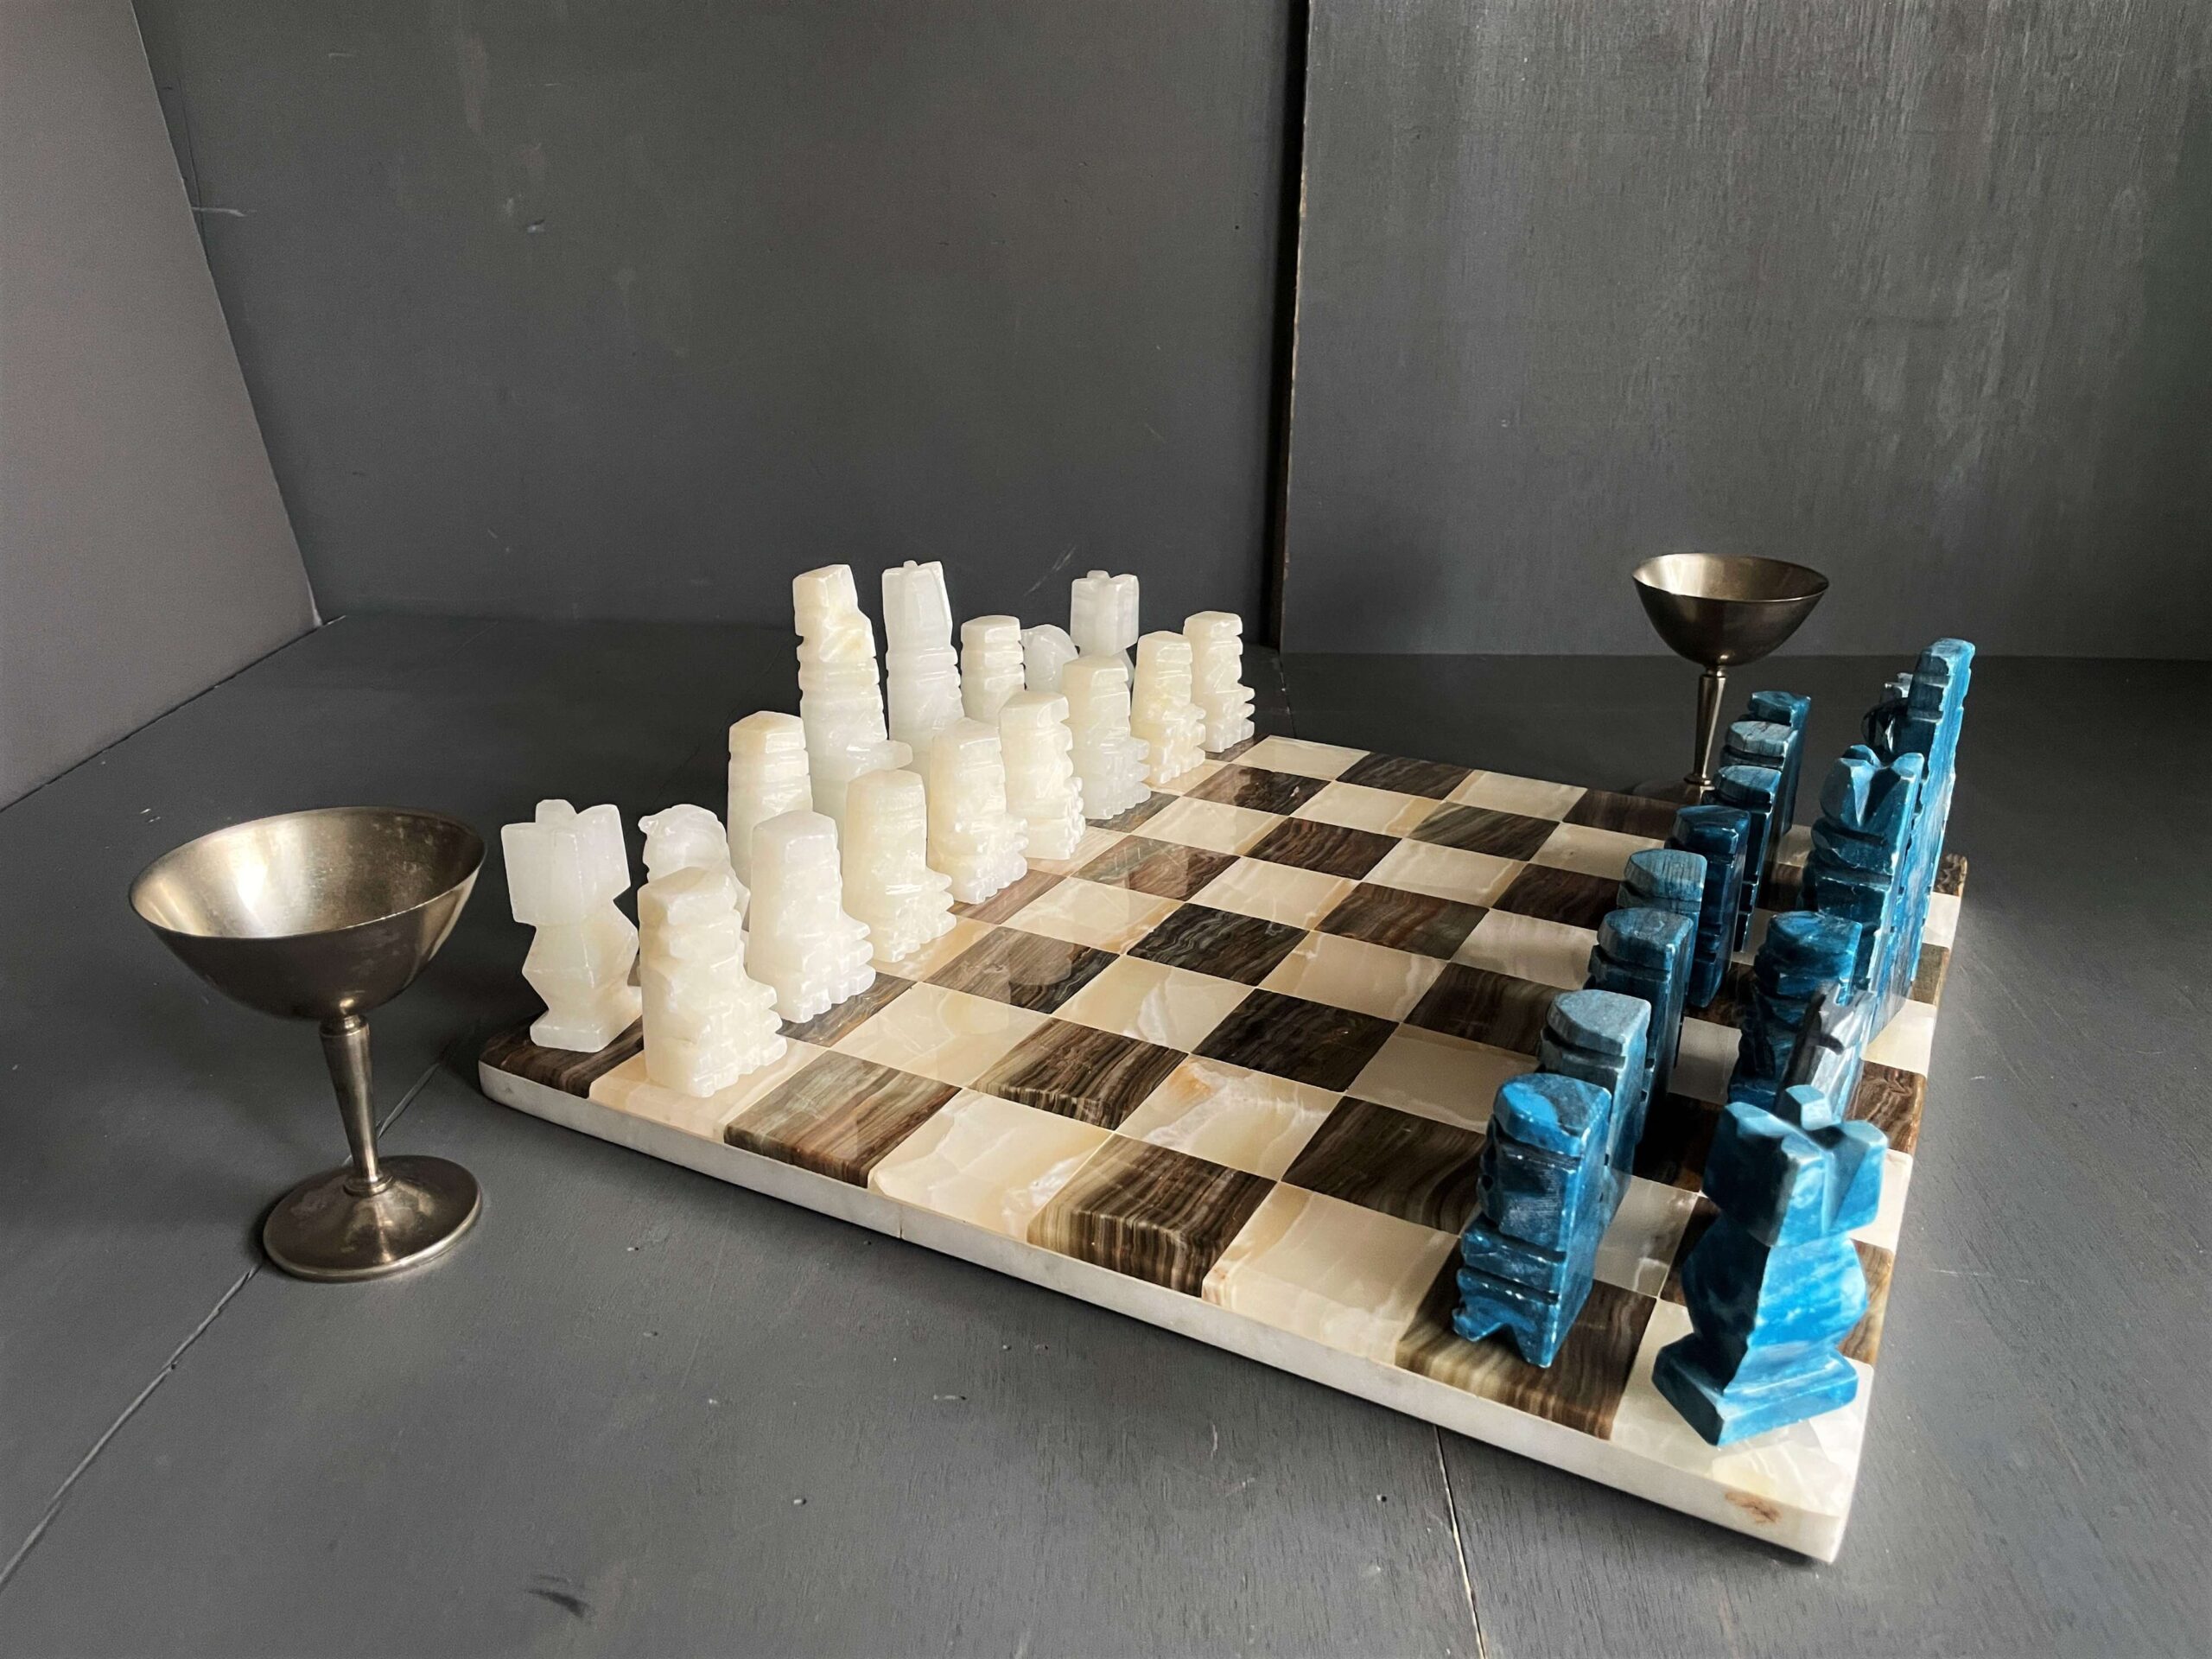 チェスセット 大理石 チェス盤 駒 収納箱 | hartwellspremium.com